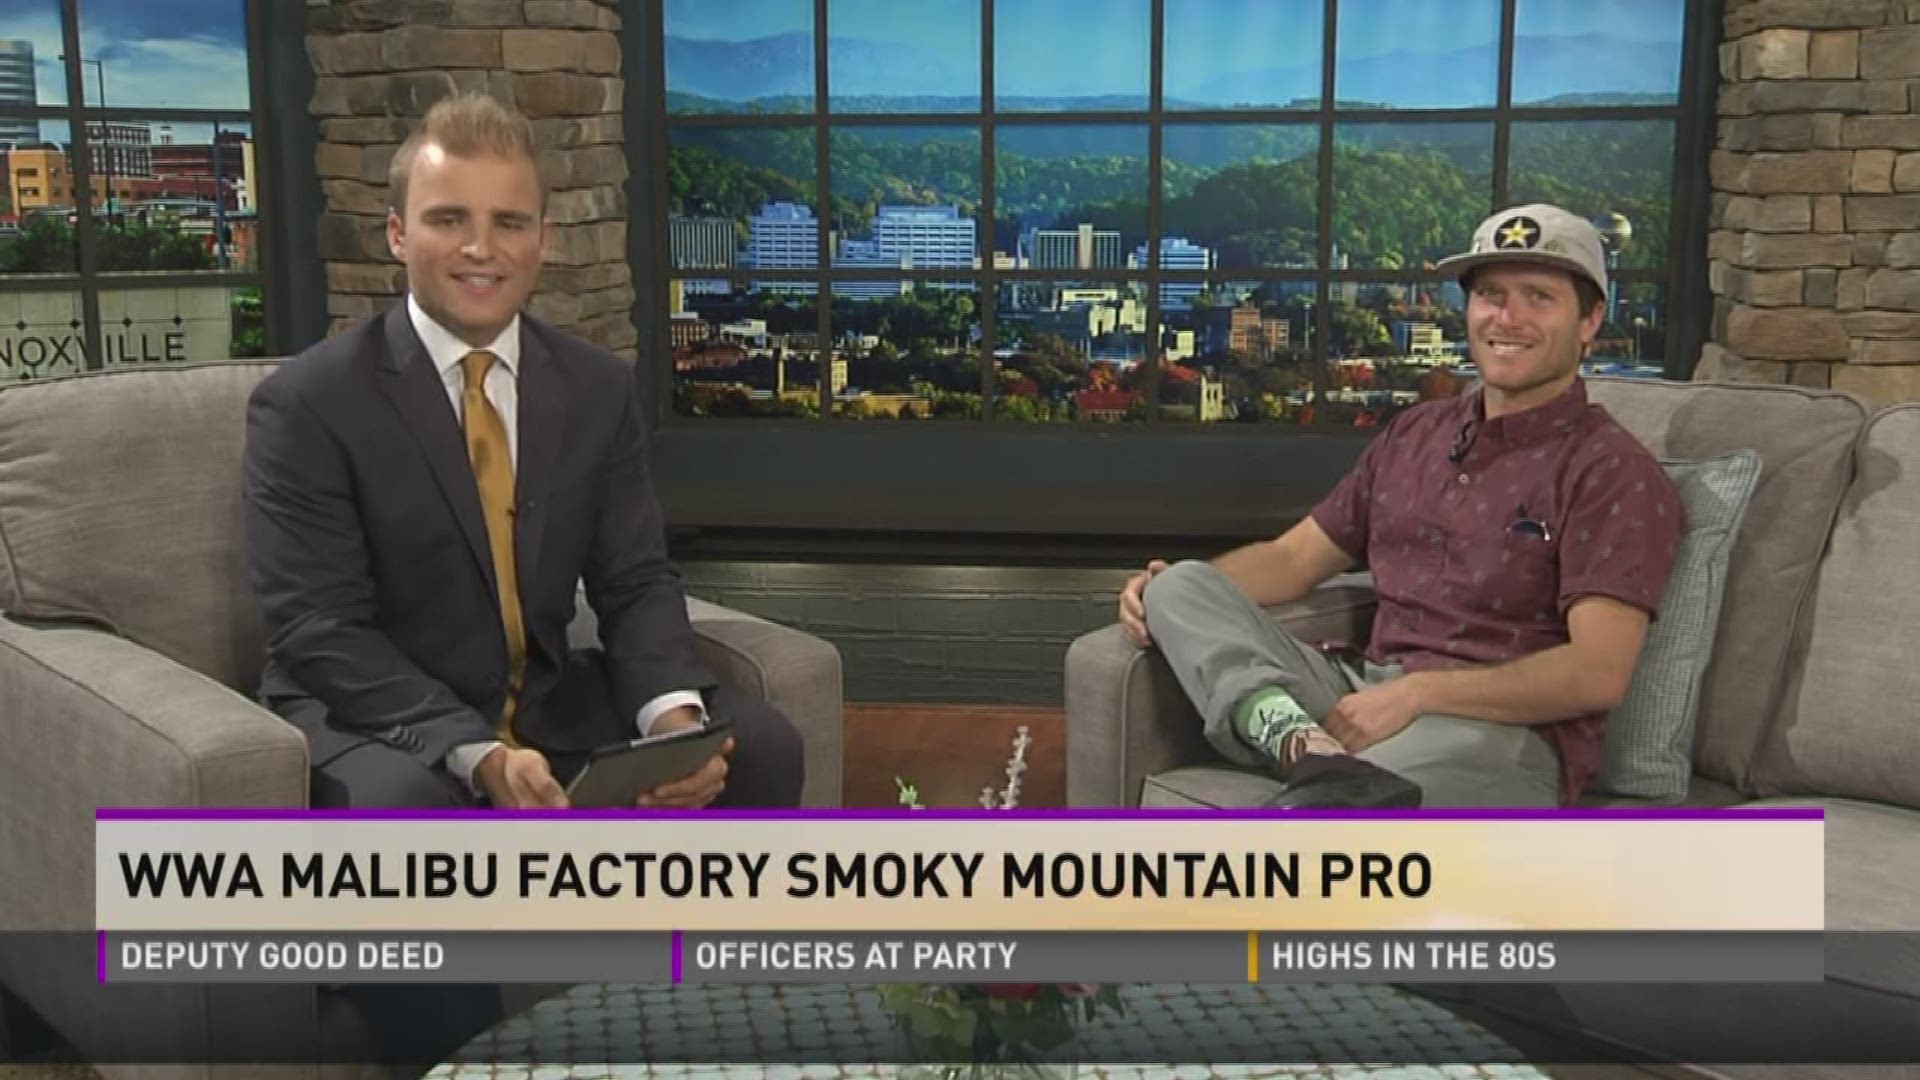 WWA Malibu Factory Smoky Mountain Pro